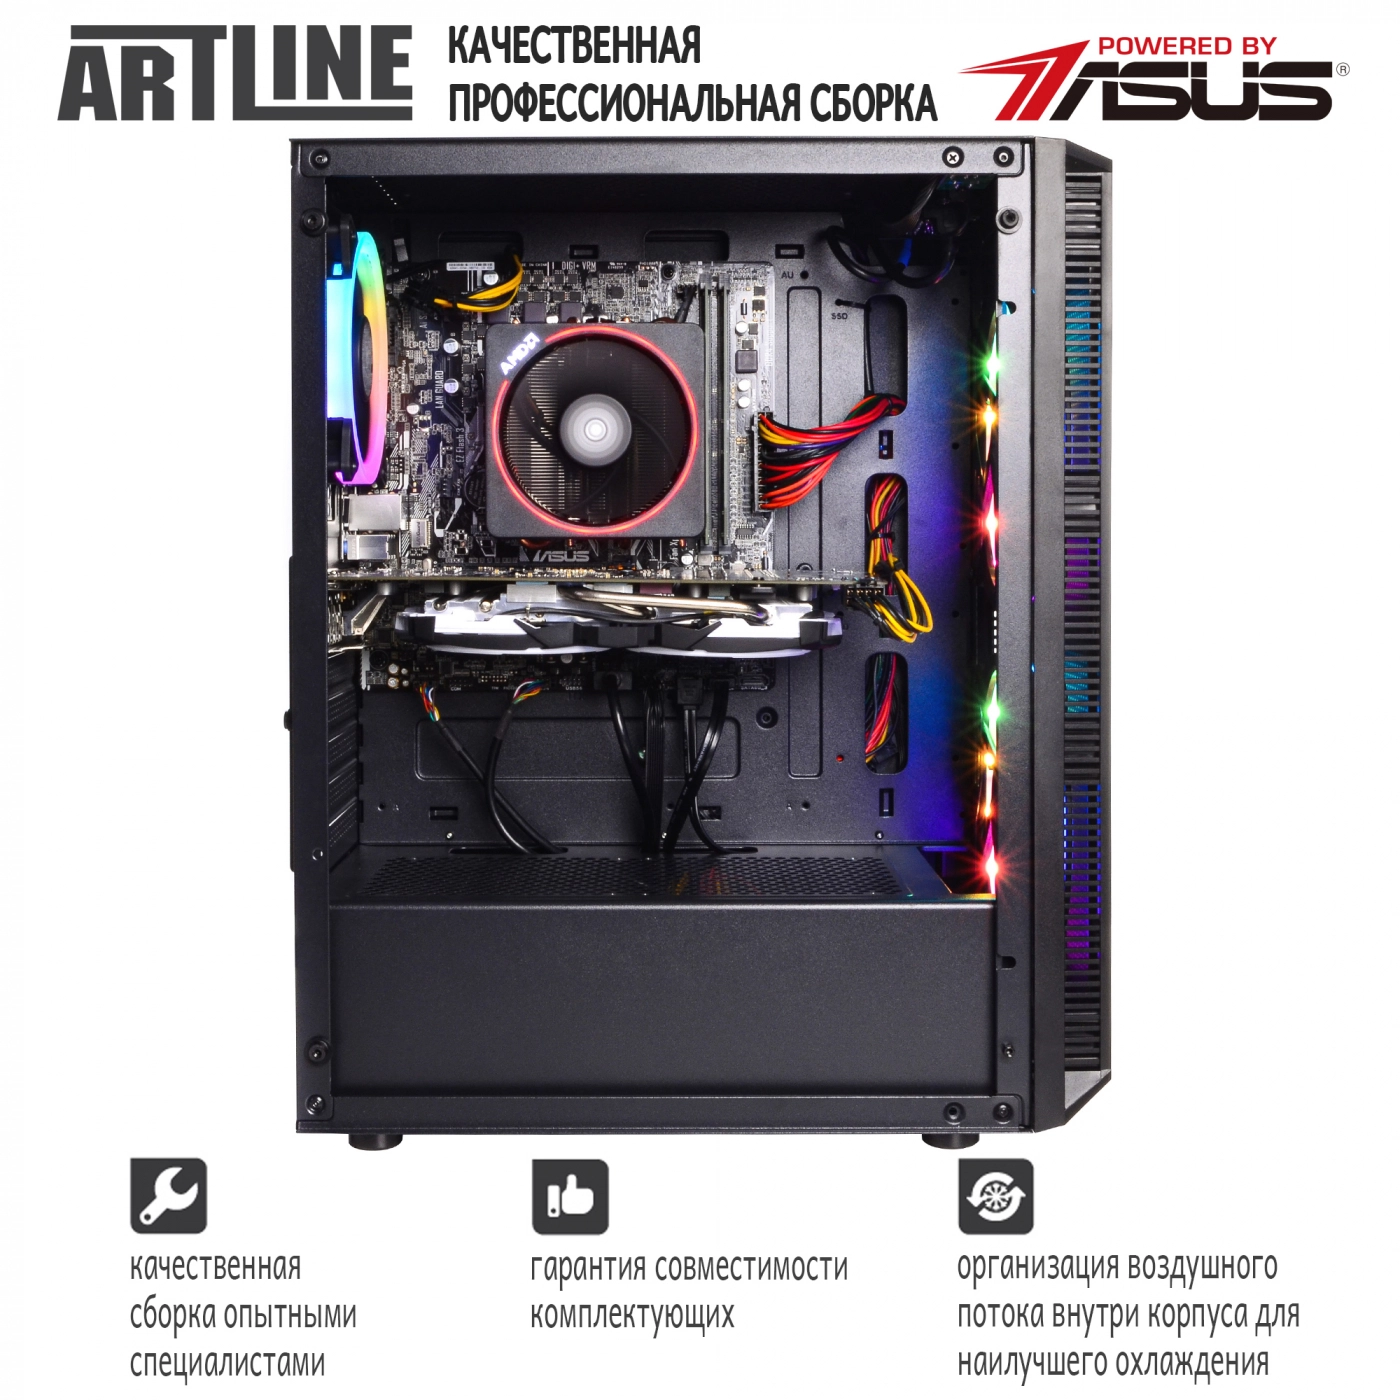 Купить Компьютер ARTLINE Gaming X63v16 - фото 8